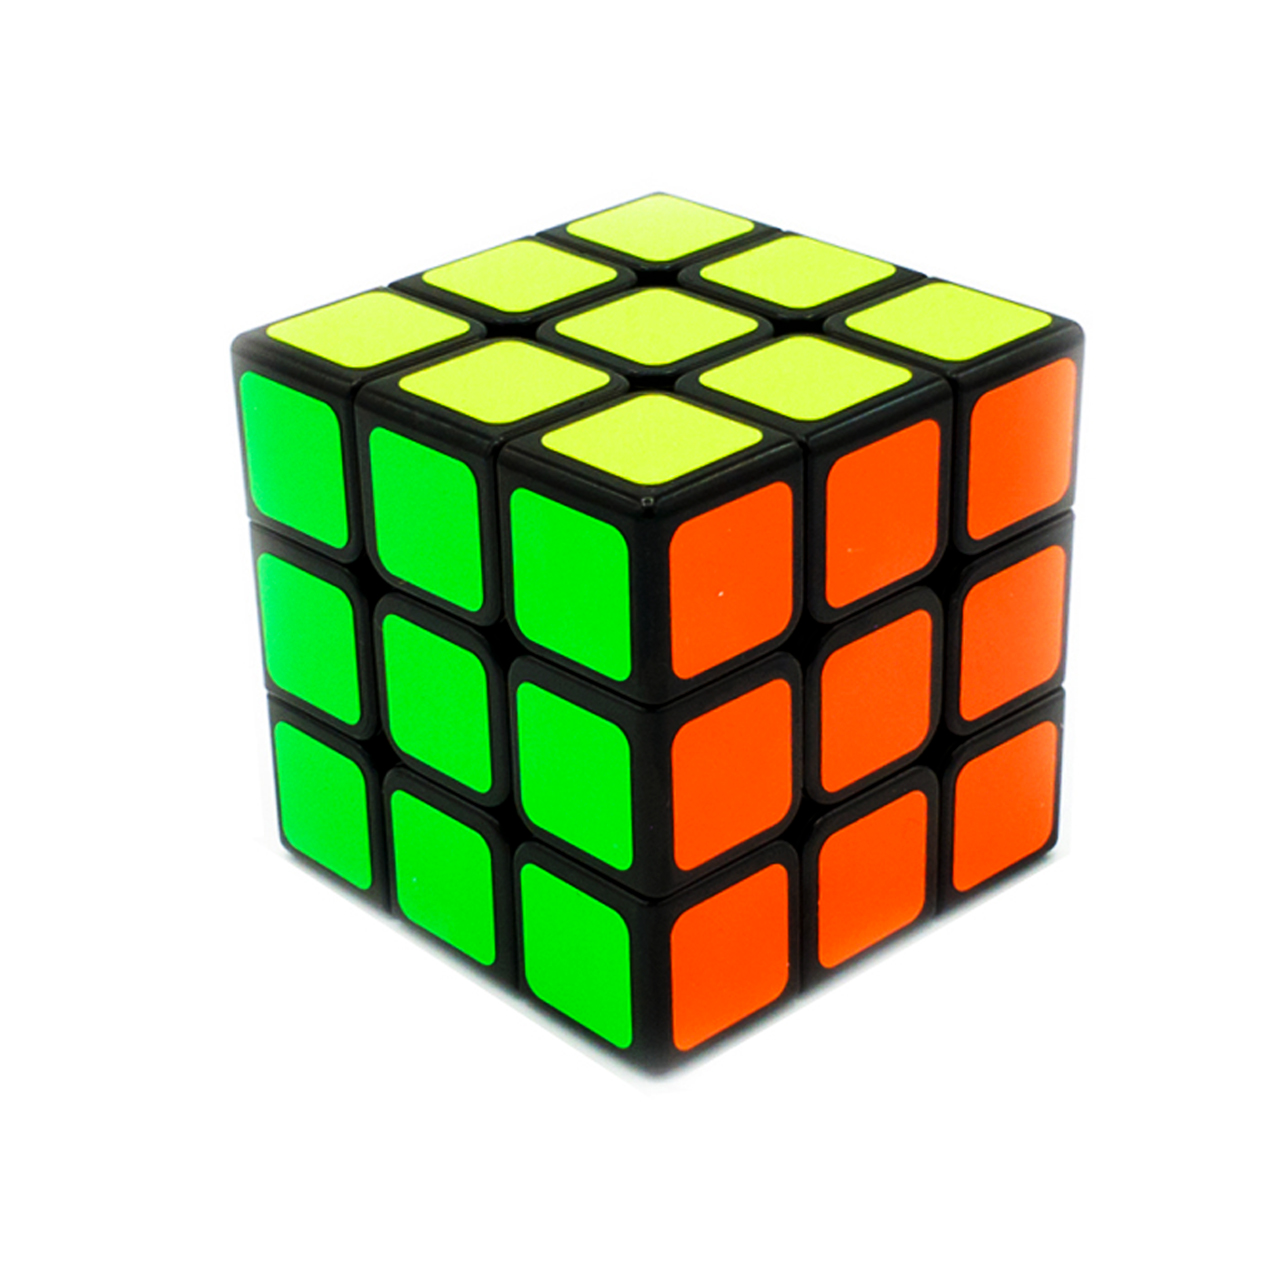 مکعب روبیک مدل Pro Cube